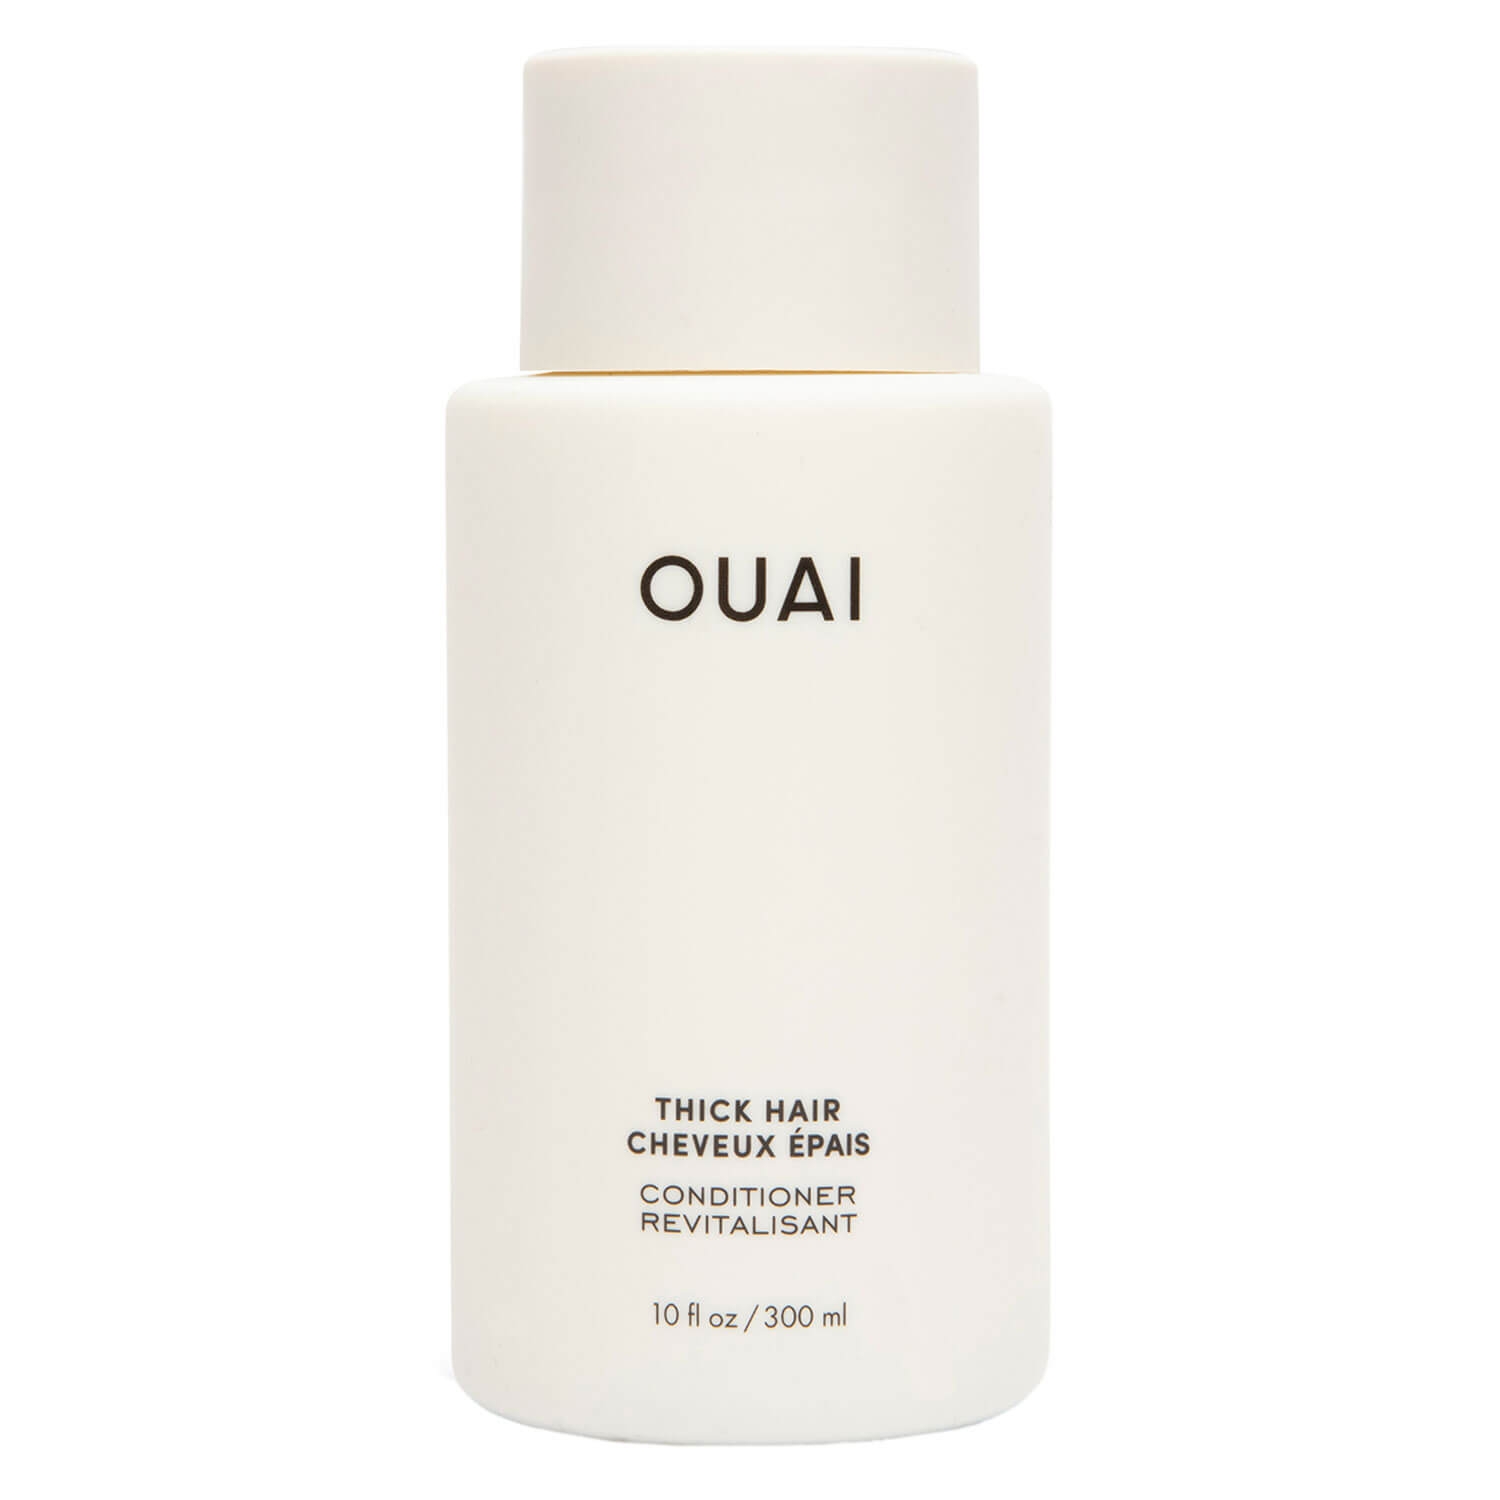 Produktbild von OUAI - Thick Hair Conditioner